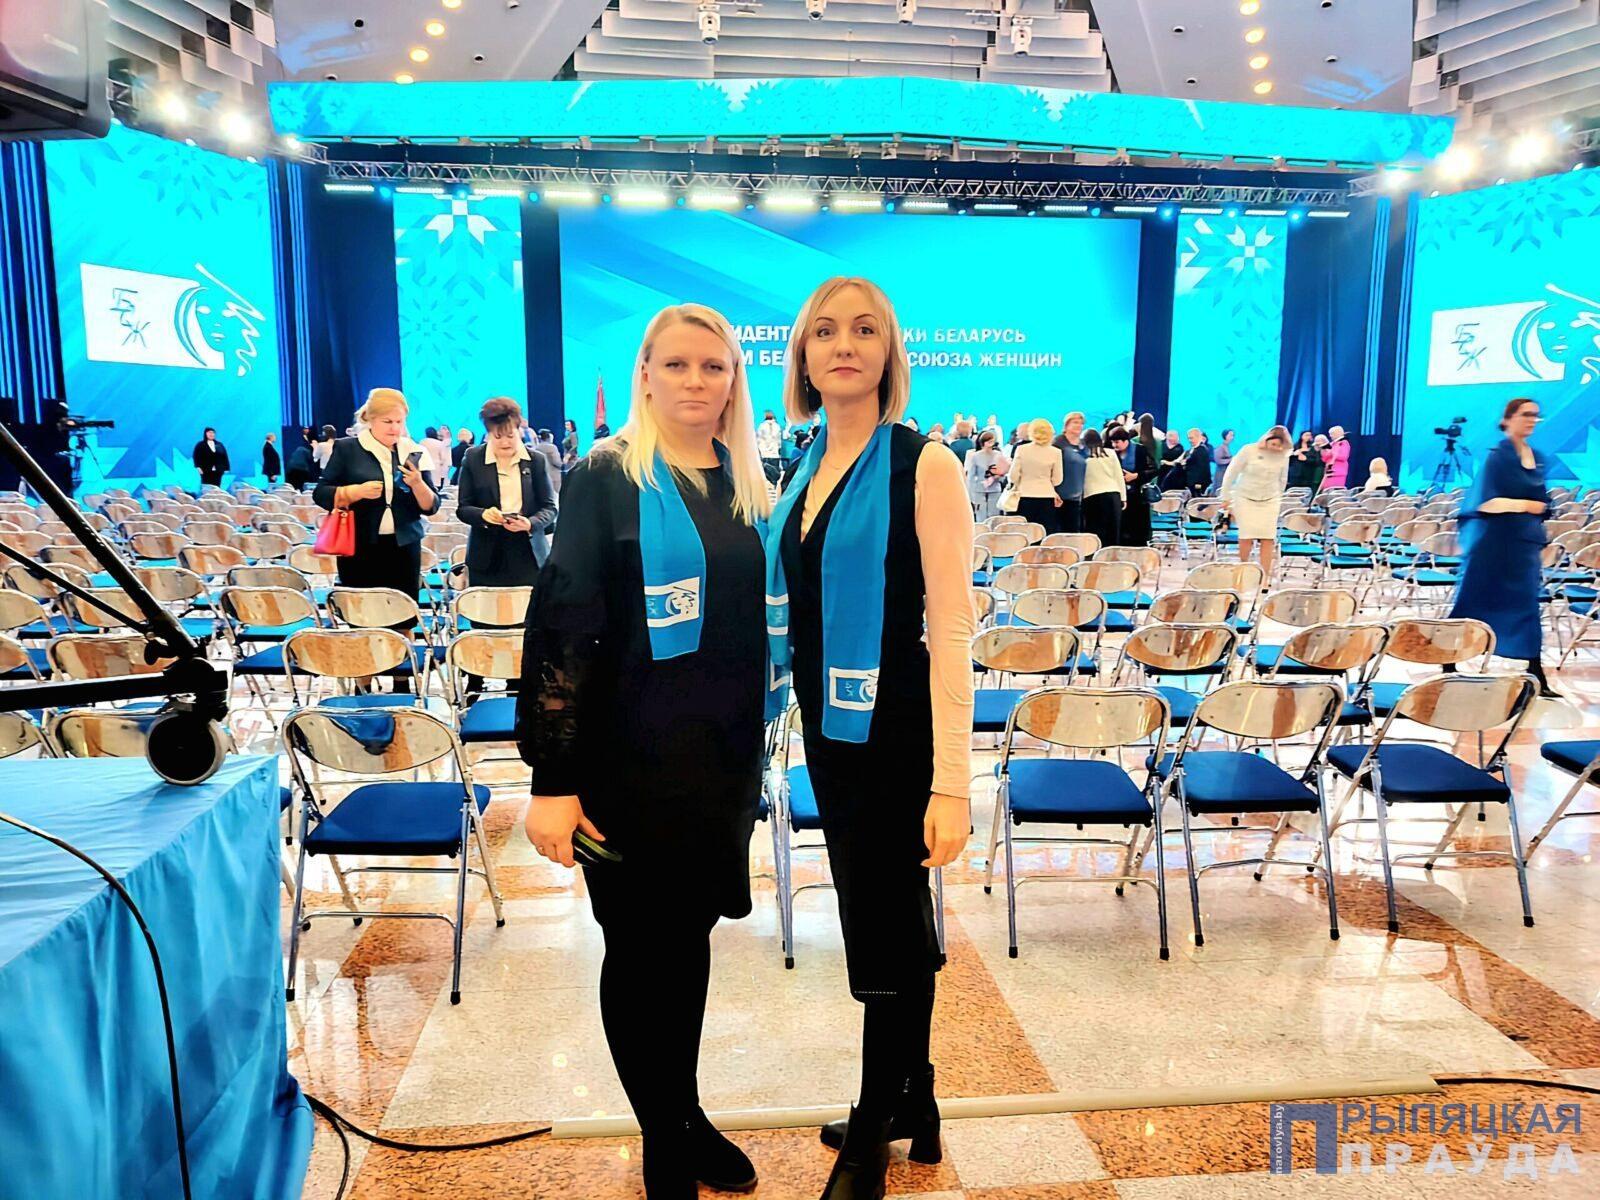 Людмила Цалко поделилась впечатлениями о встрече Президента с активом Белорусского союза женщин